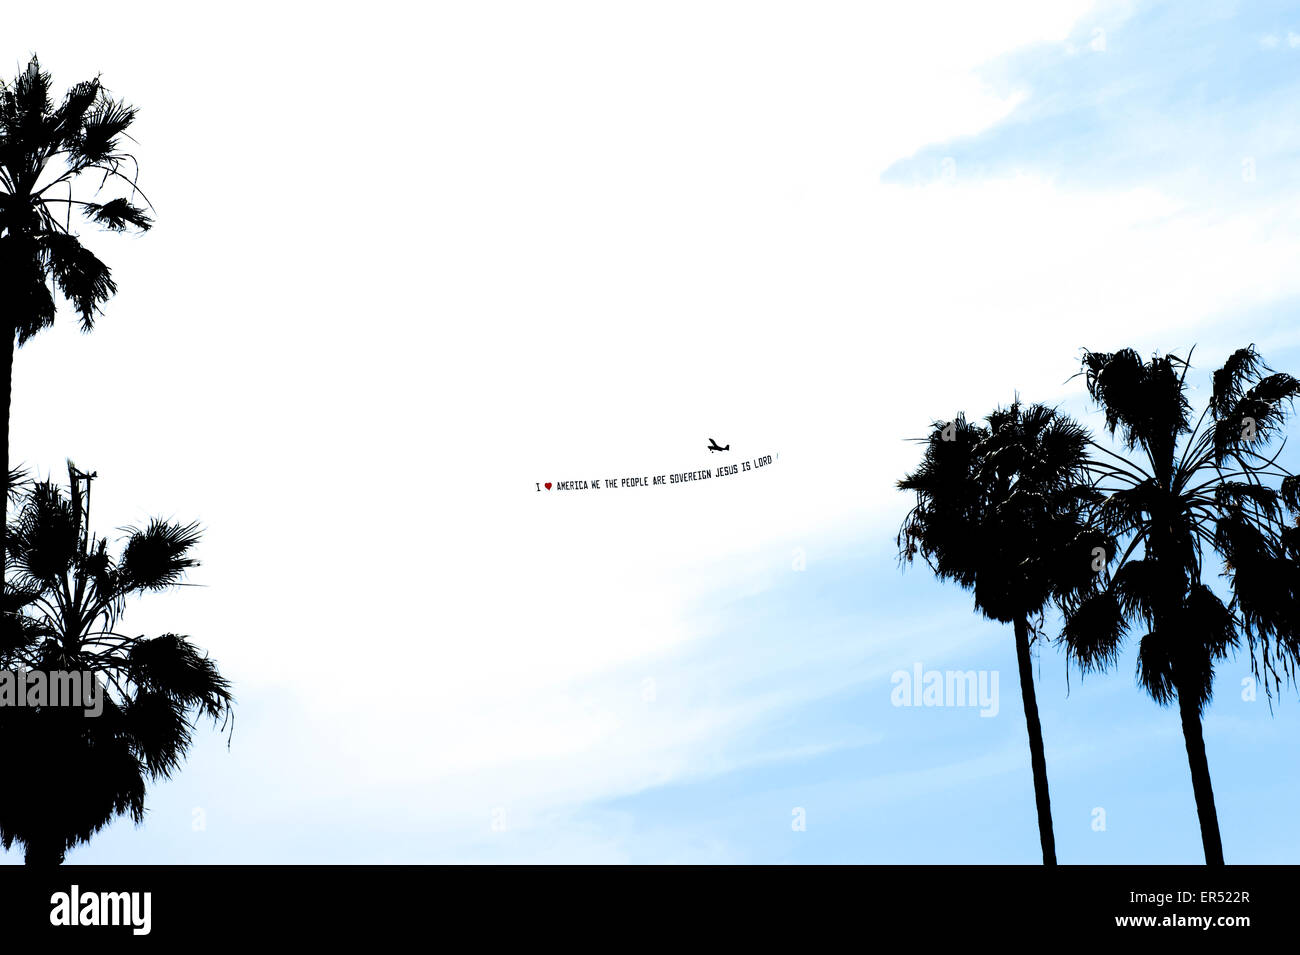 Flugzeug fliegen Palmen Abschleppen Werbebanner, im Vordergrund. Venice Beach, Kalifornien, USA. Stockfoto